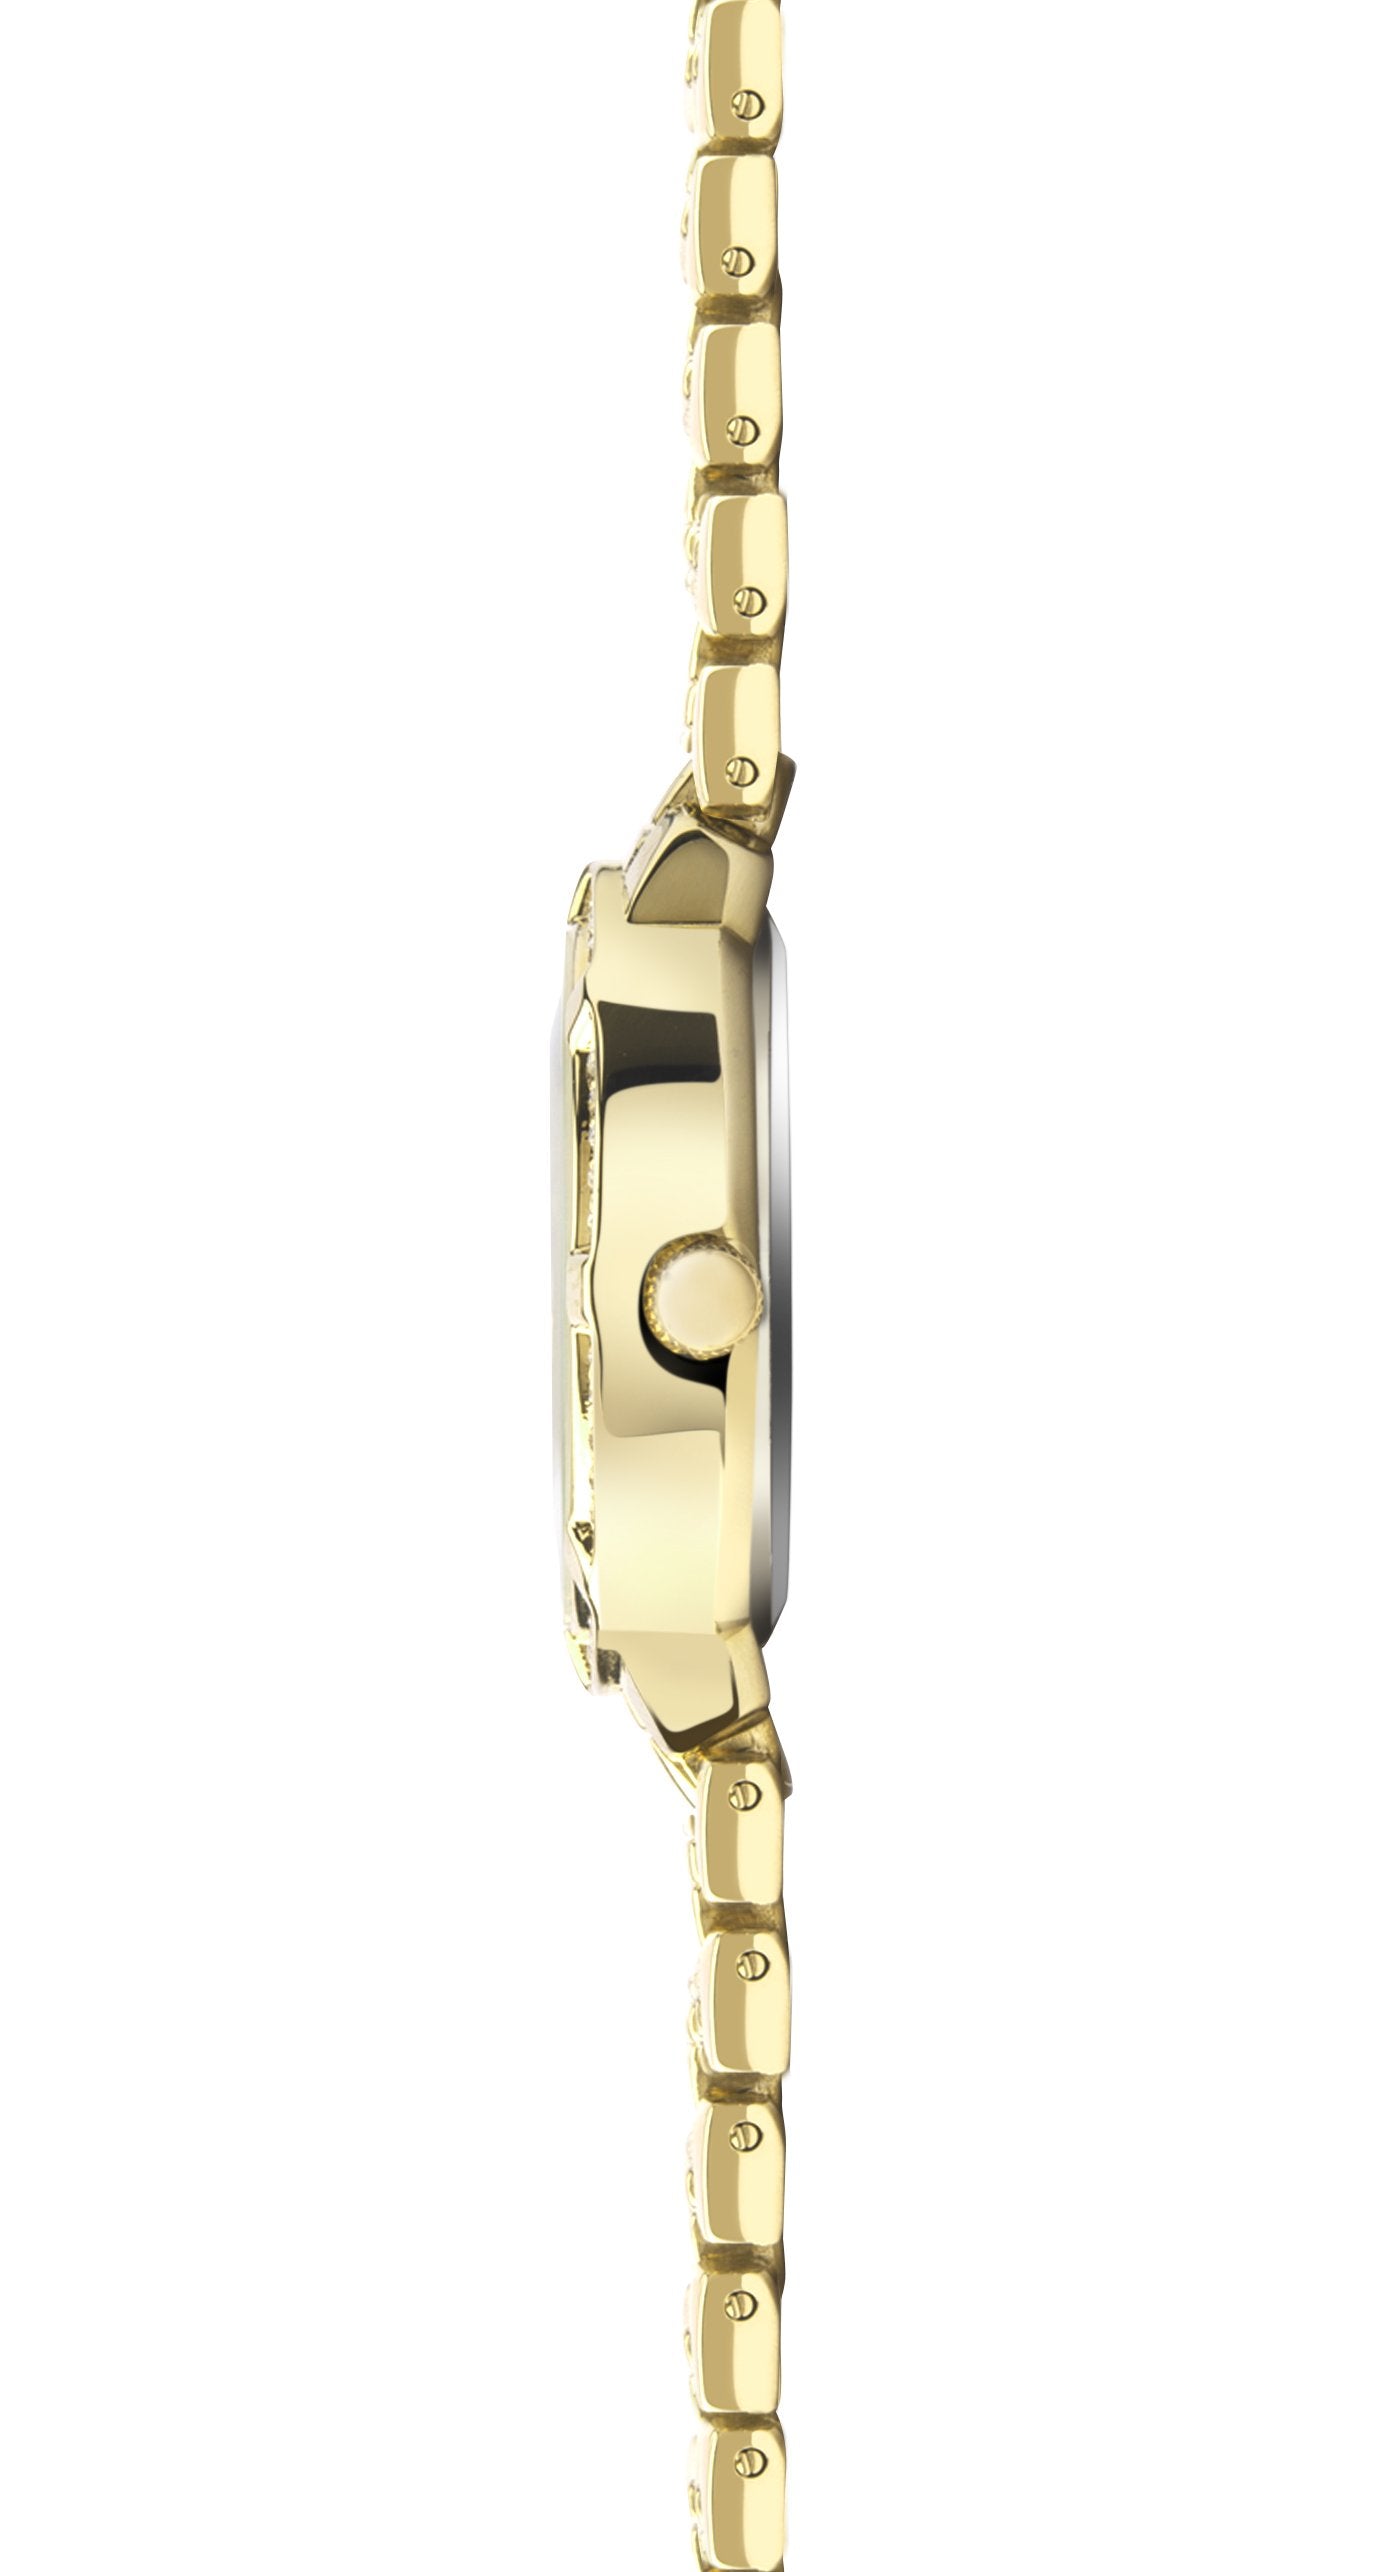 Sekonda Women’s Gold Plated Stone Set Bracelet Watch SK40034